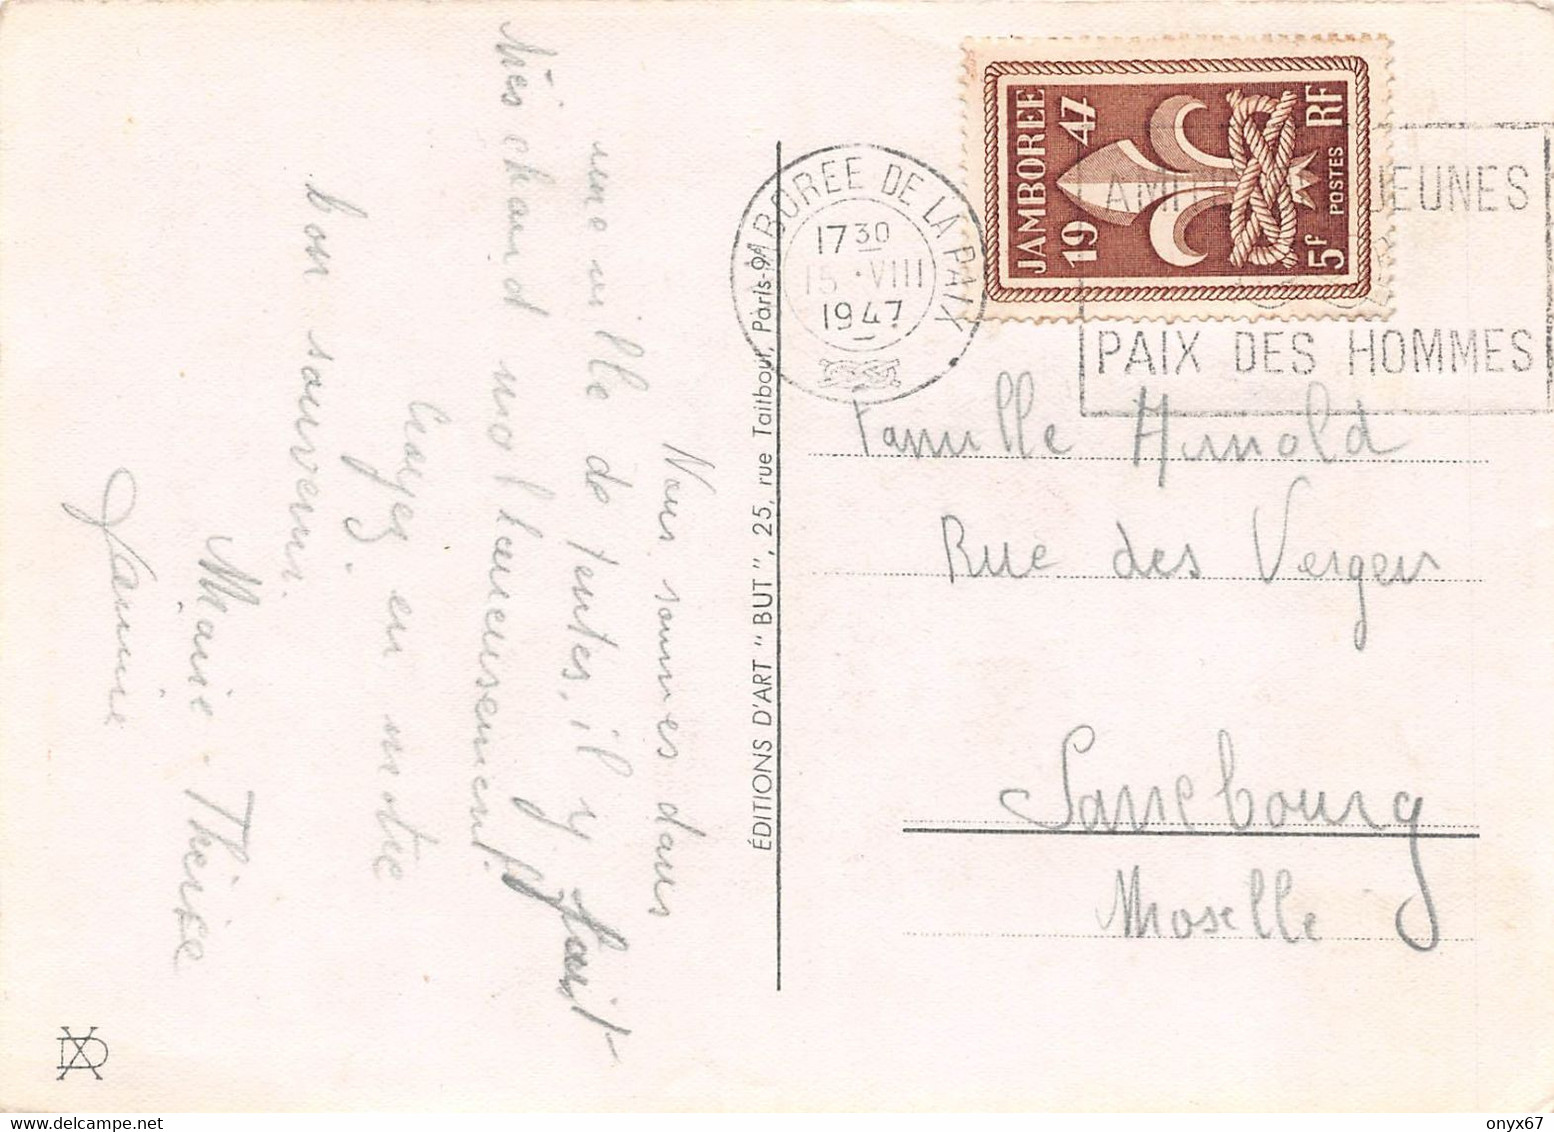 GF-SCOUTISME-SCOUT-Jeune Garçon-grenouille-Cachet-Tampon JAMBOREE De La Paix 1947-Timbre-Stamp-Briefmarke-GRAND FORMAT - Movimiento Scout